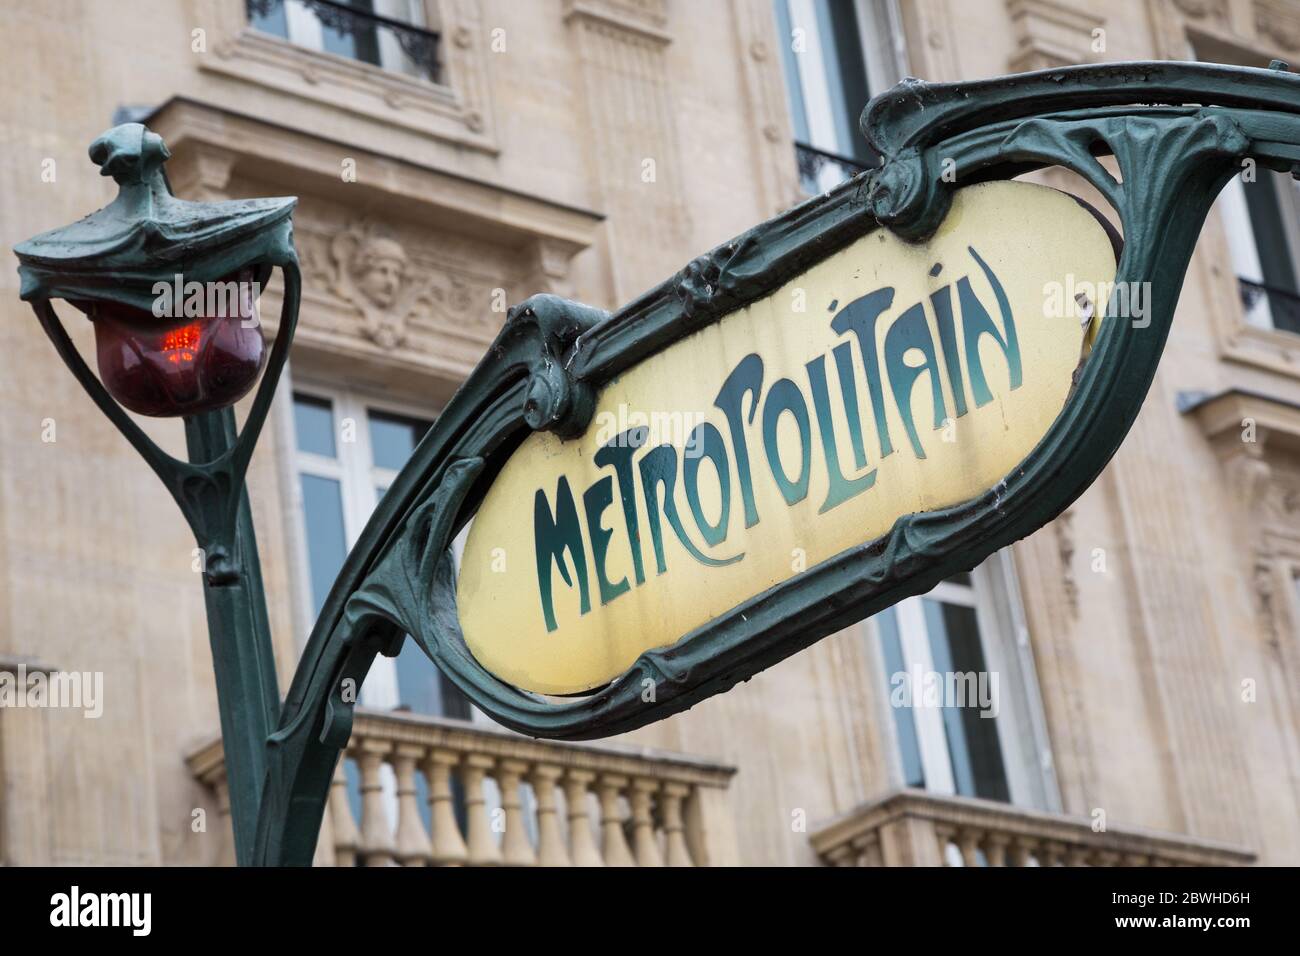 Vue rapprochée d'un panneau de métro de style vintage dans le quartier Latin, Paris, France Banque D'Images